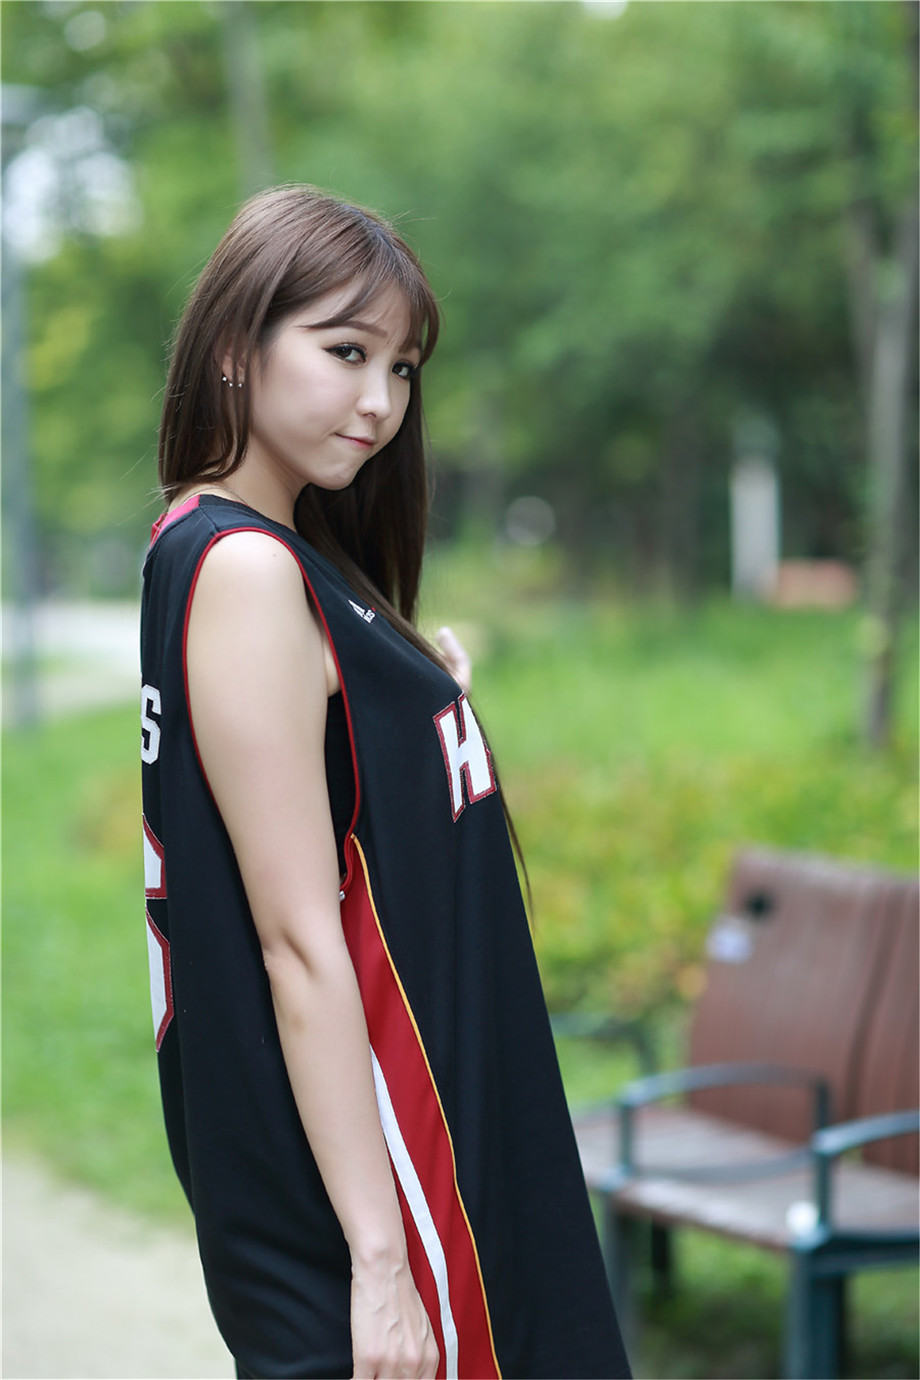 清纯韩国美女车模李恩慧性感篮球衣外拍写真图片第1张